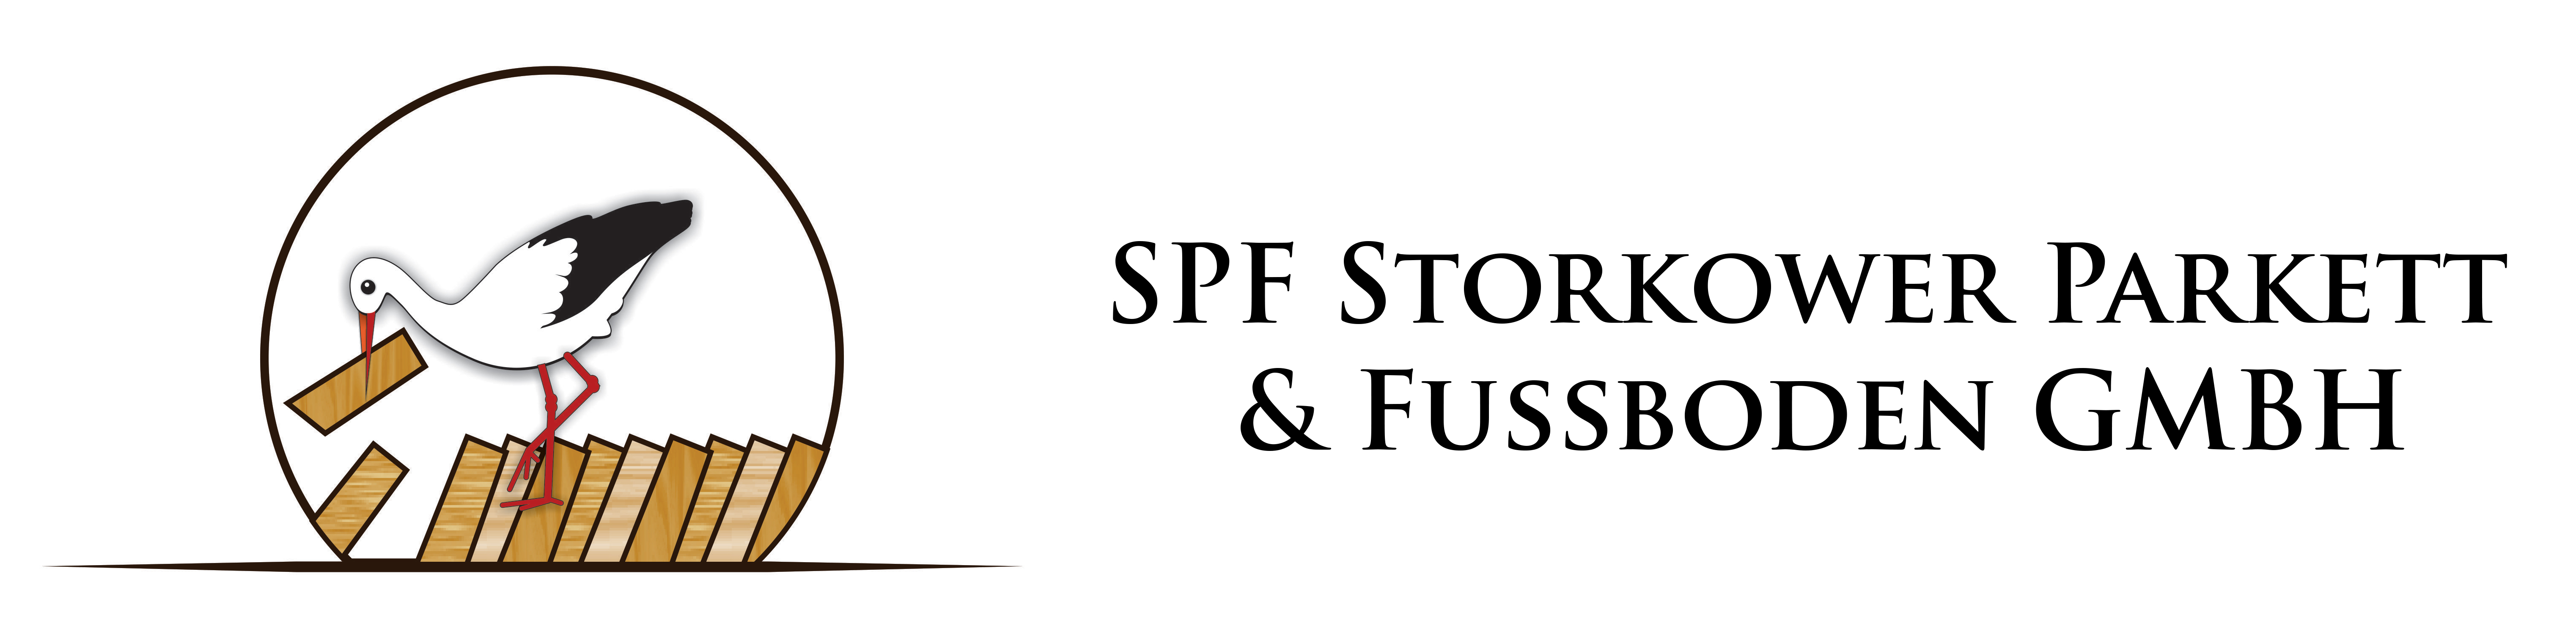 Storkower Parkett und Fussboden GmbH